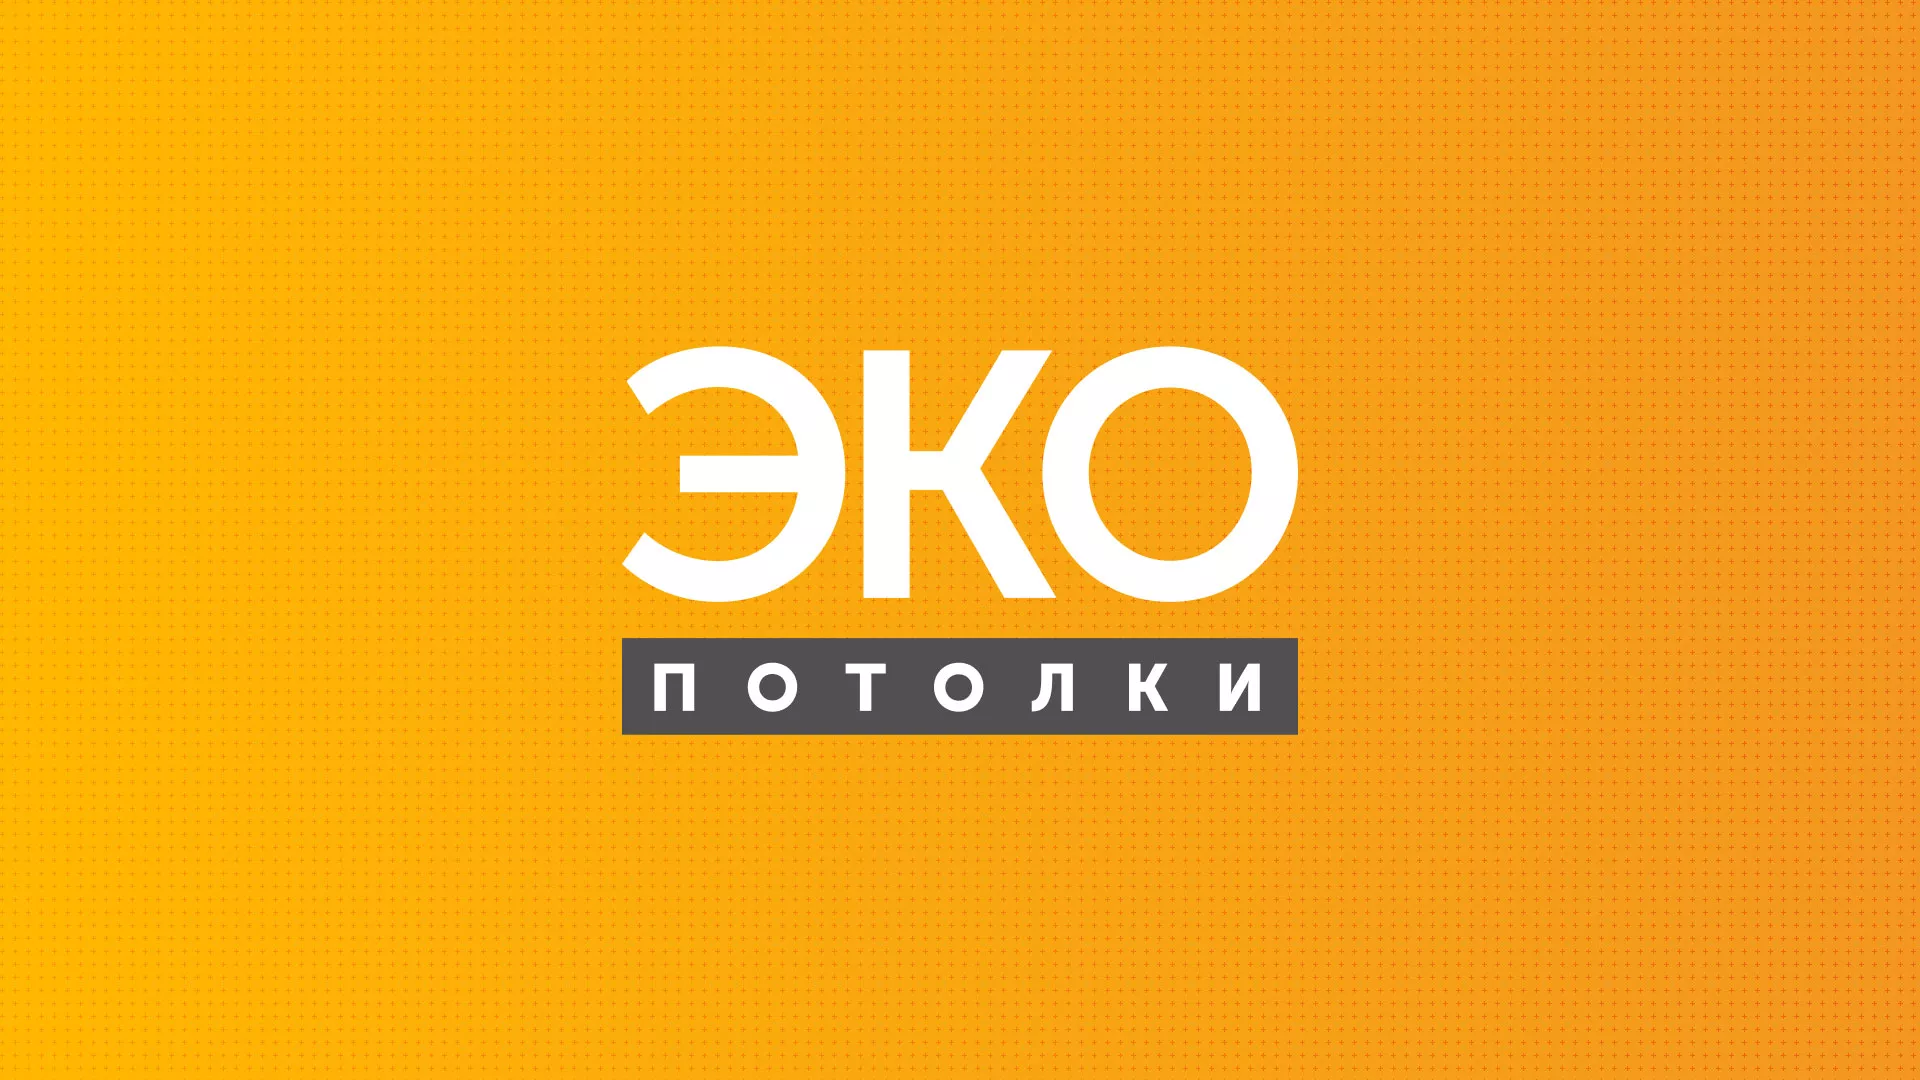 Разработка сайта по натяжным потолкам «Эко Потолки» в Урюпинске